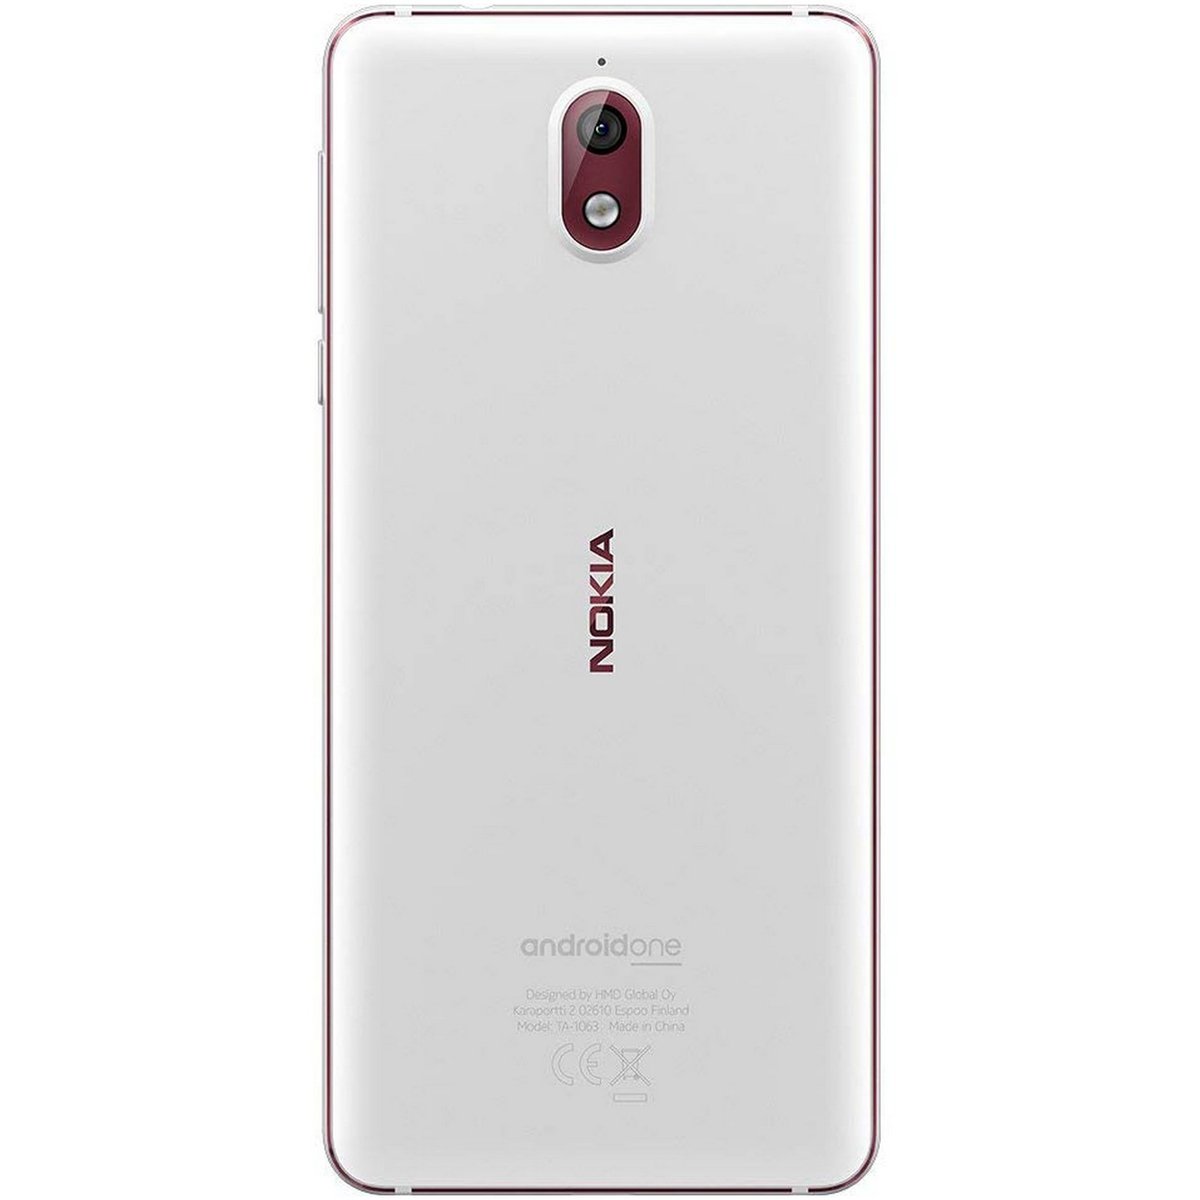 Nokia 3.1 32GB White